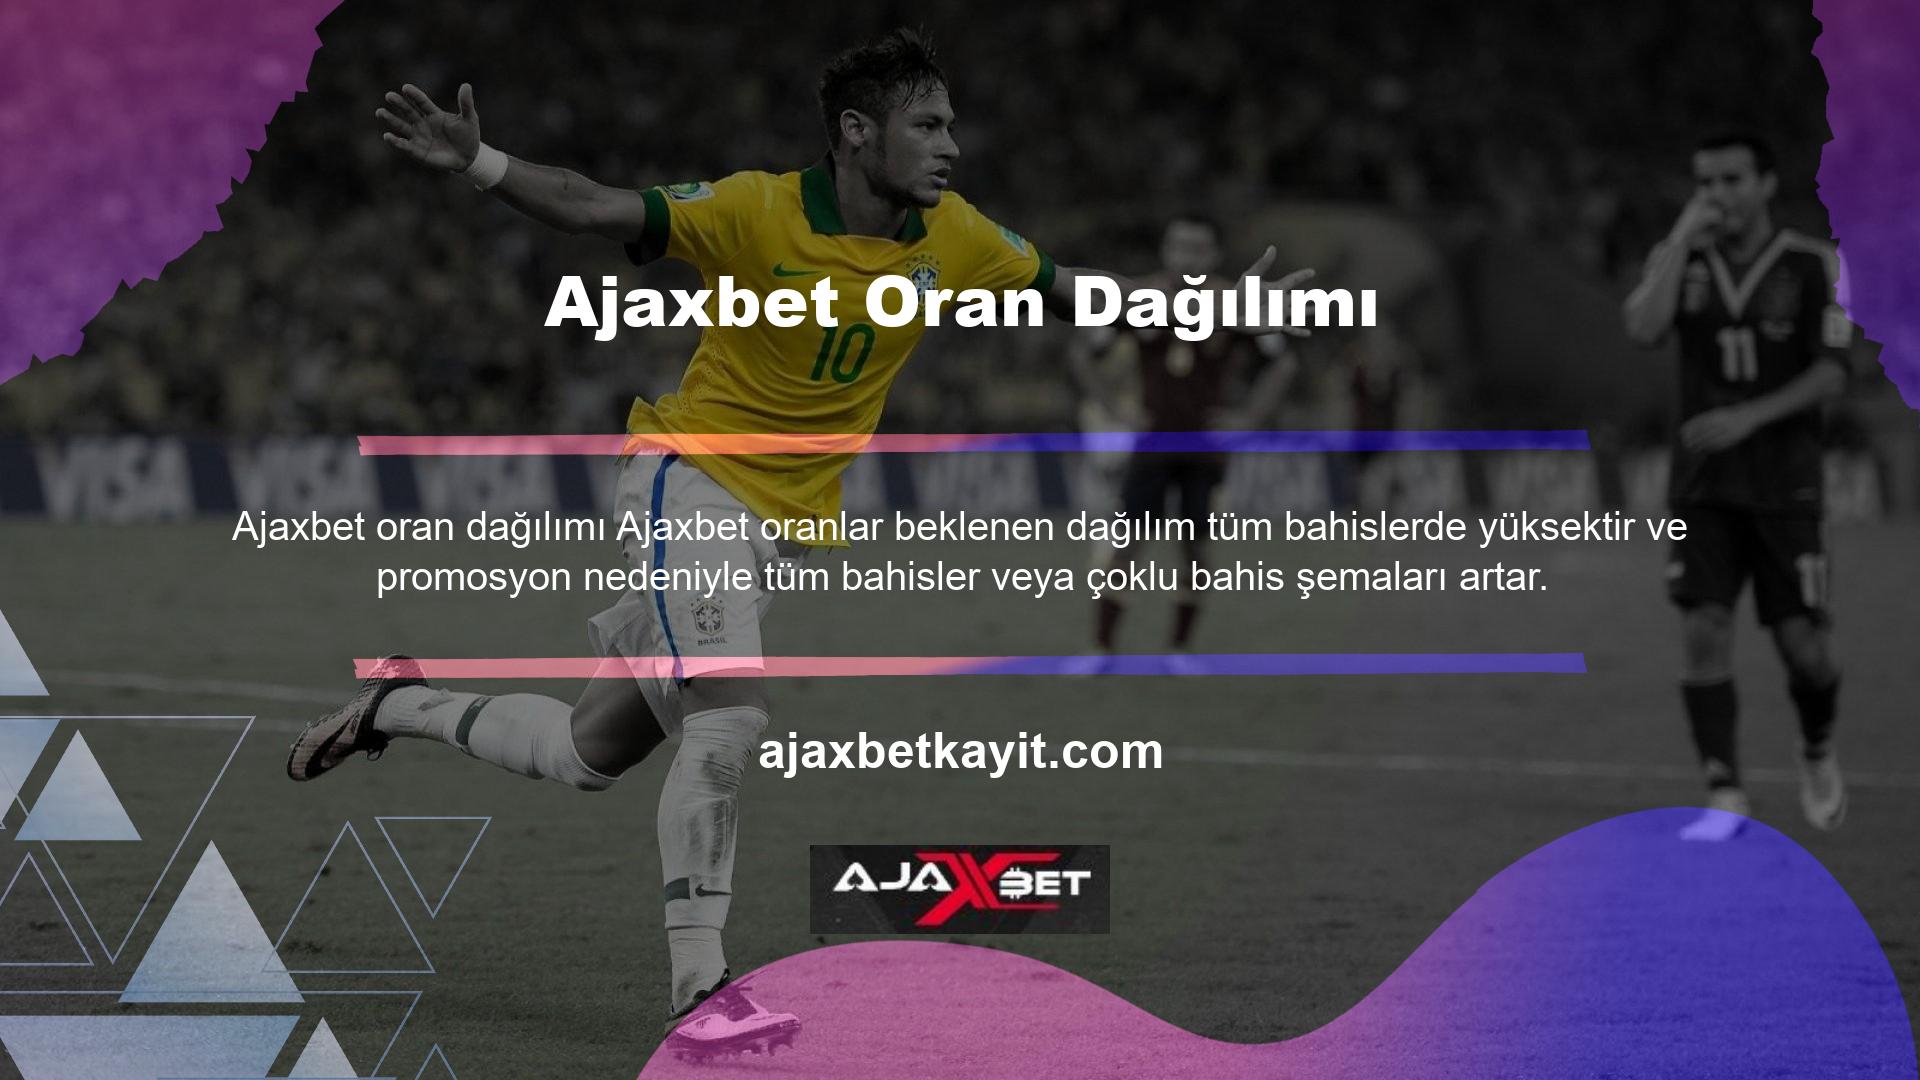 Ajaxbet web sitesi kesinlikle sadece bahis alanında değil para karşılığı online oyunlar alanında da hizmet veren bir web sitesidir